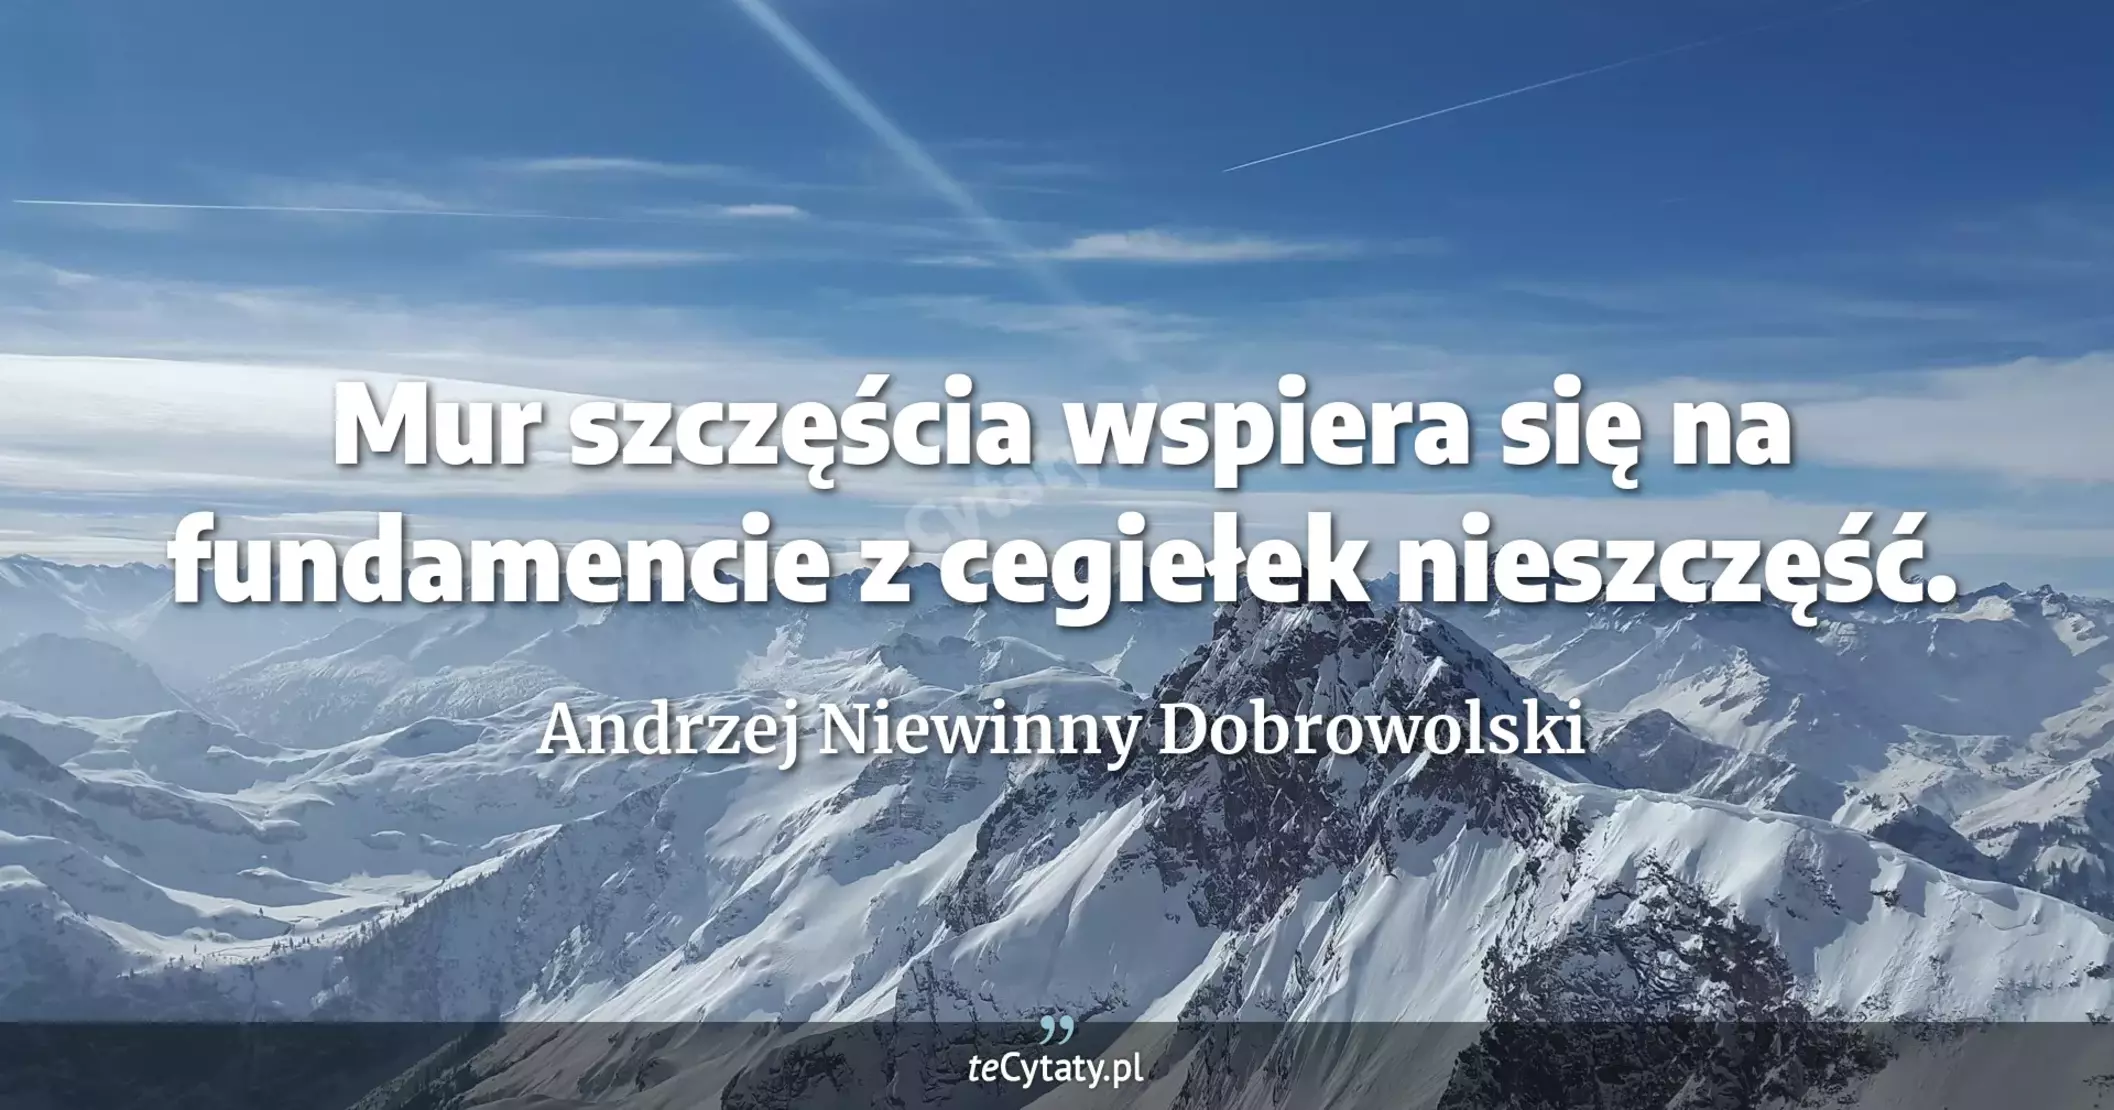 Mur szczęścia wspiera się na fundamencie z cegiełek nieszczęść. - Andrzej Niewinny Dobrowolski